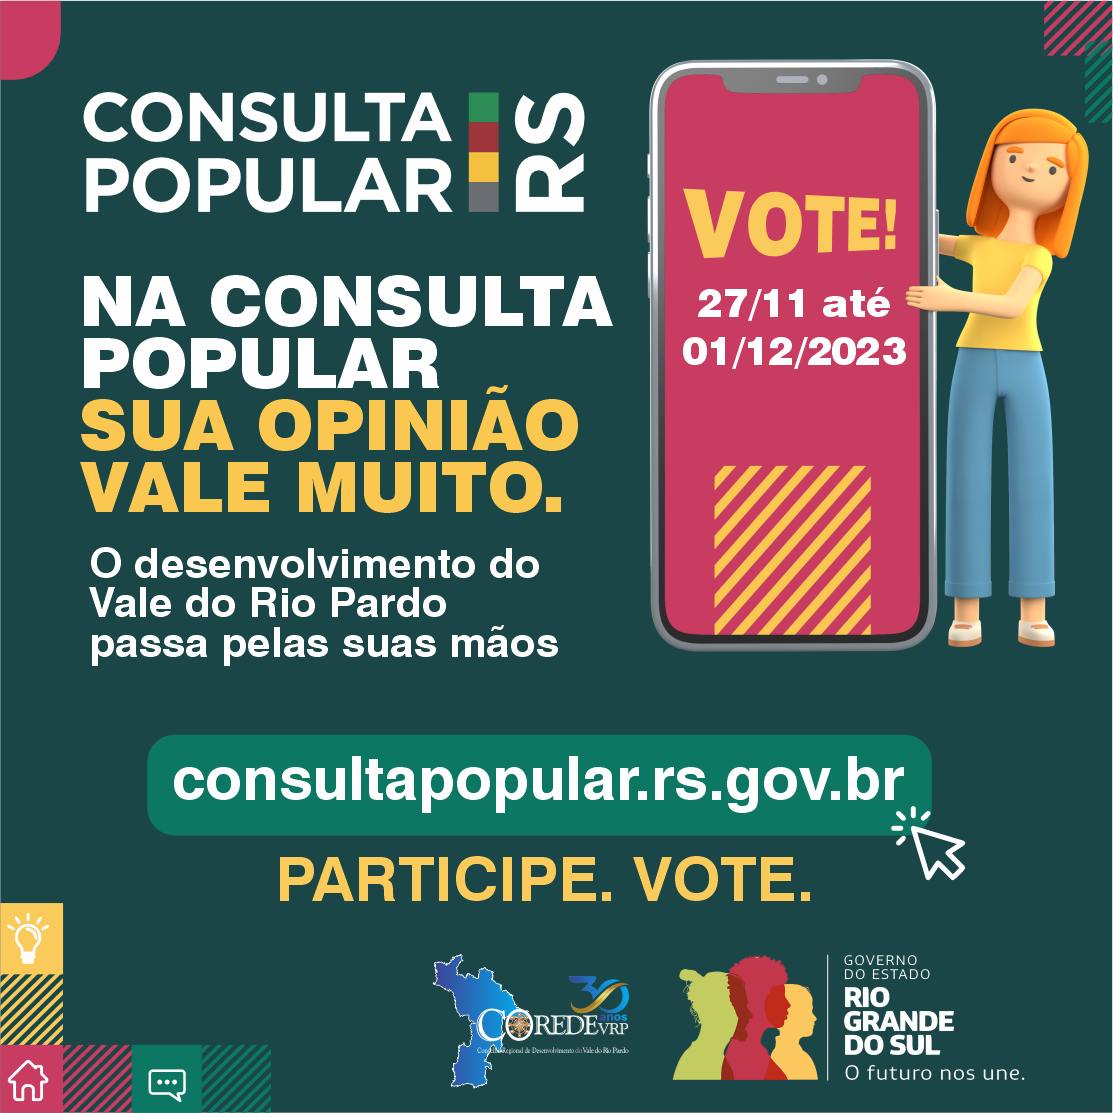 PARTICIPE DA CONSULTA POPULAR